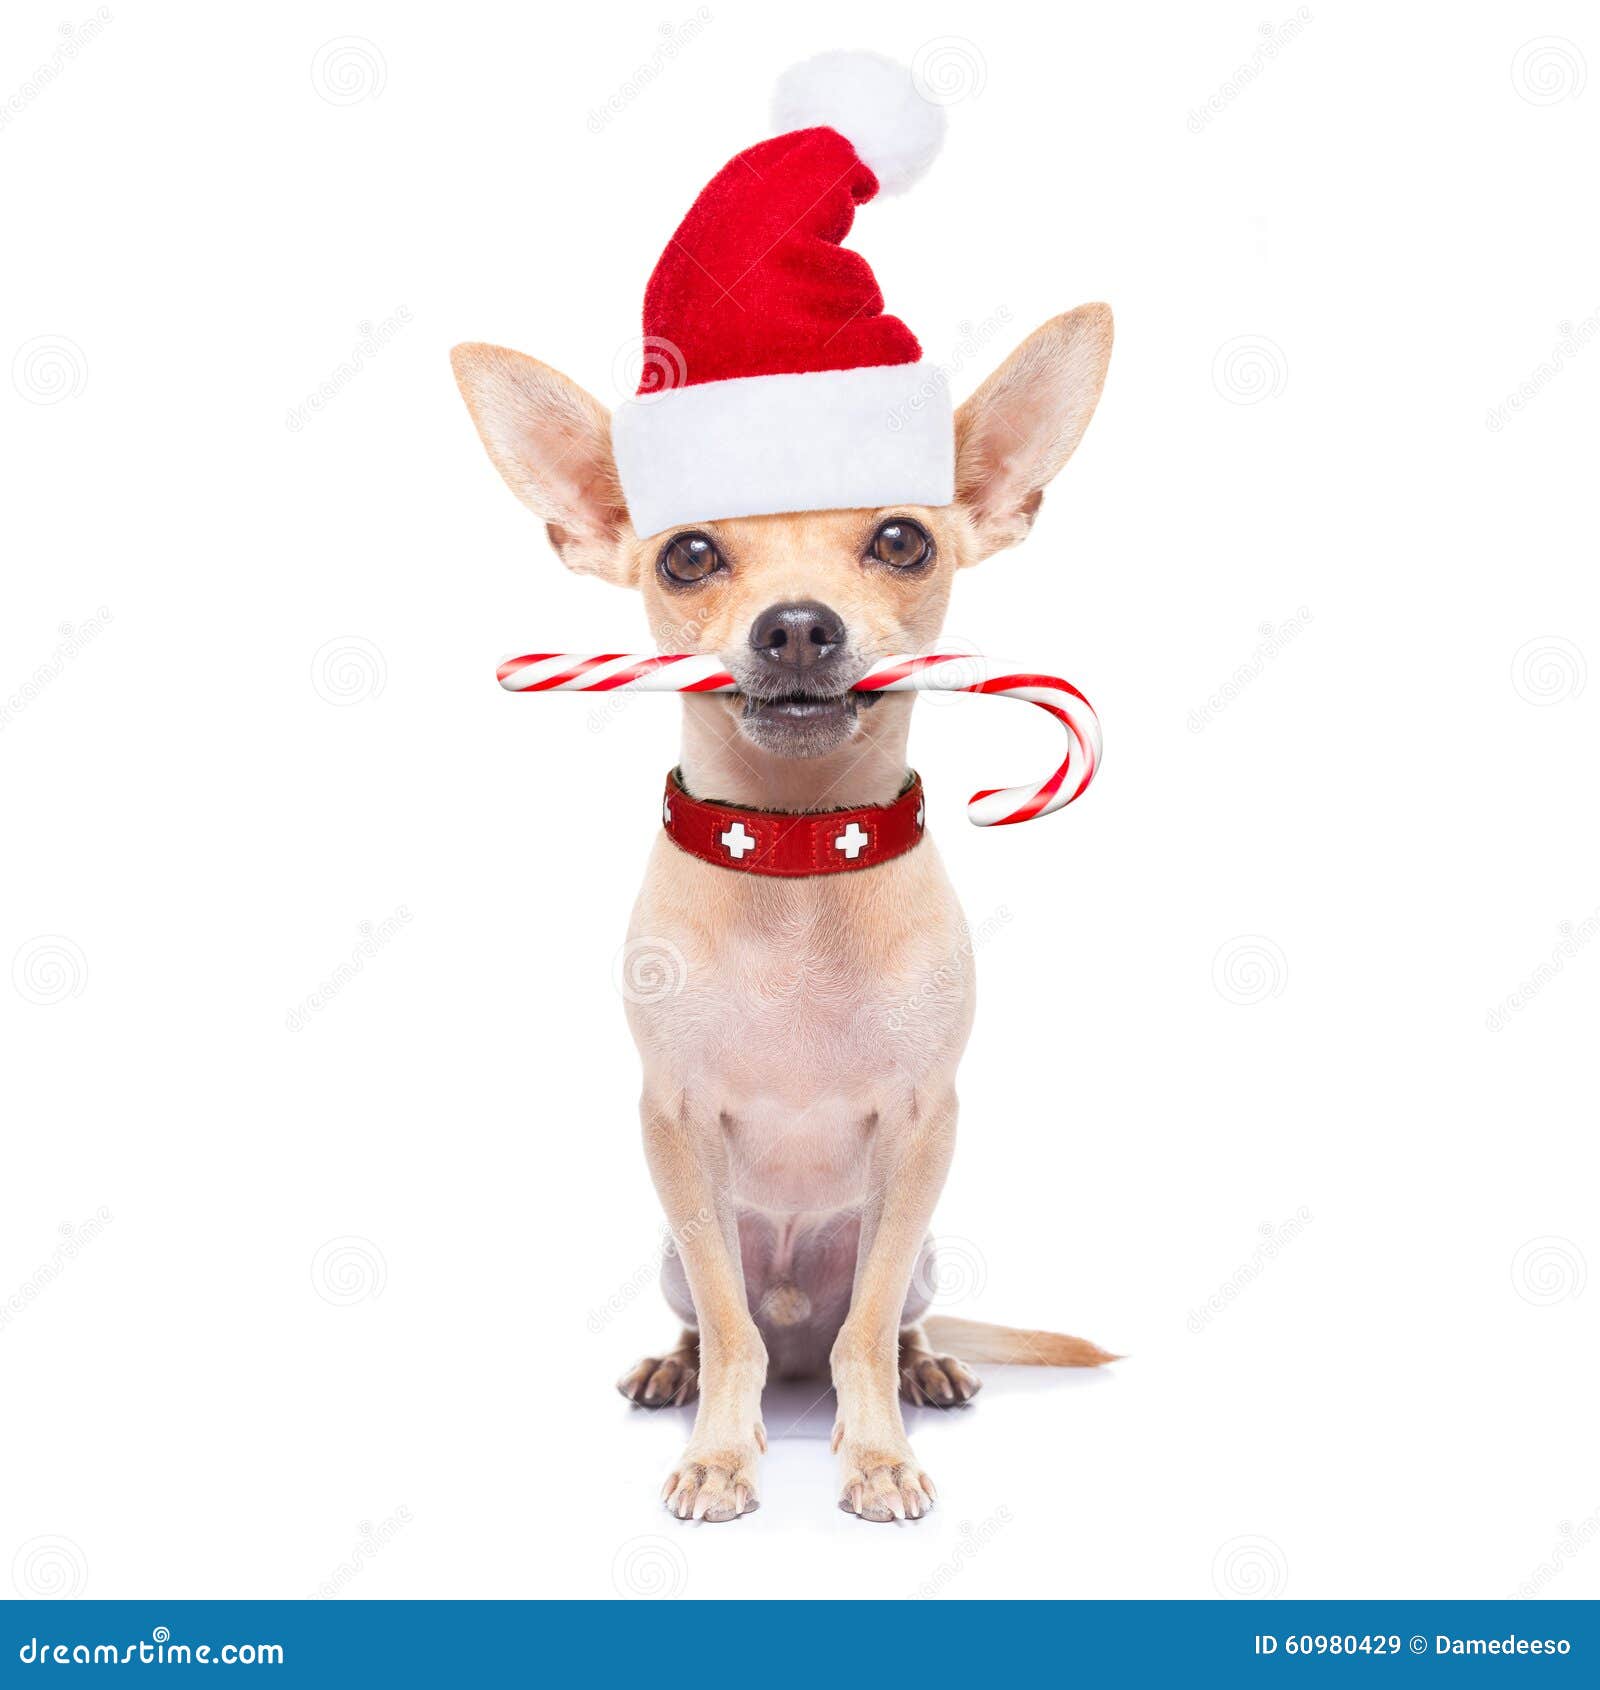 amanecer Asser desenterrar Perro De La Navidad Como Papá Noel Imagen de archivo - Imagen de divertido,  caramelo: 60980429